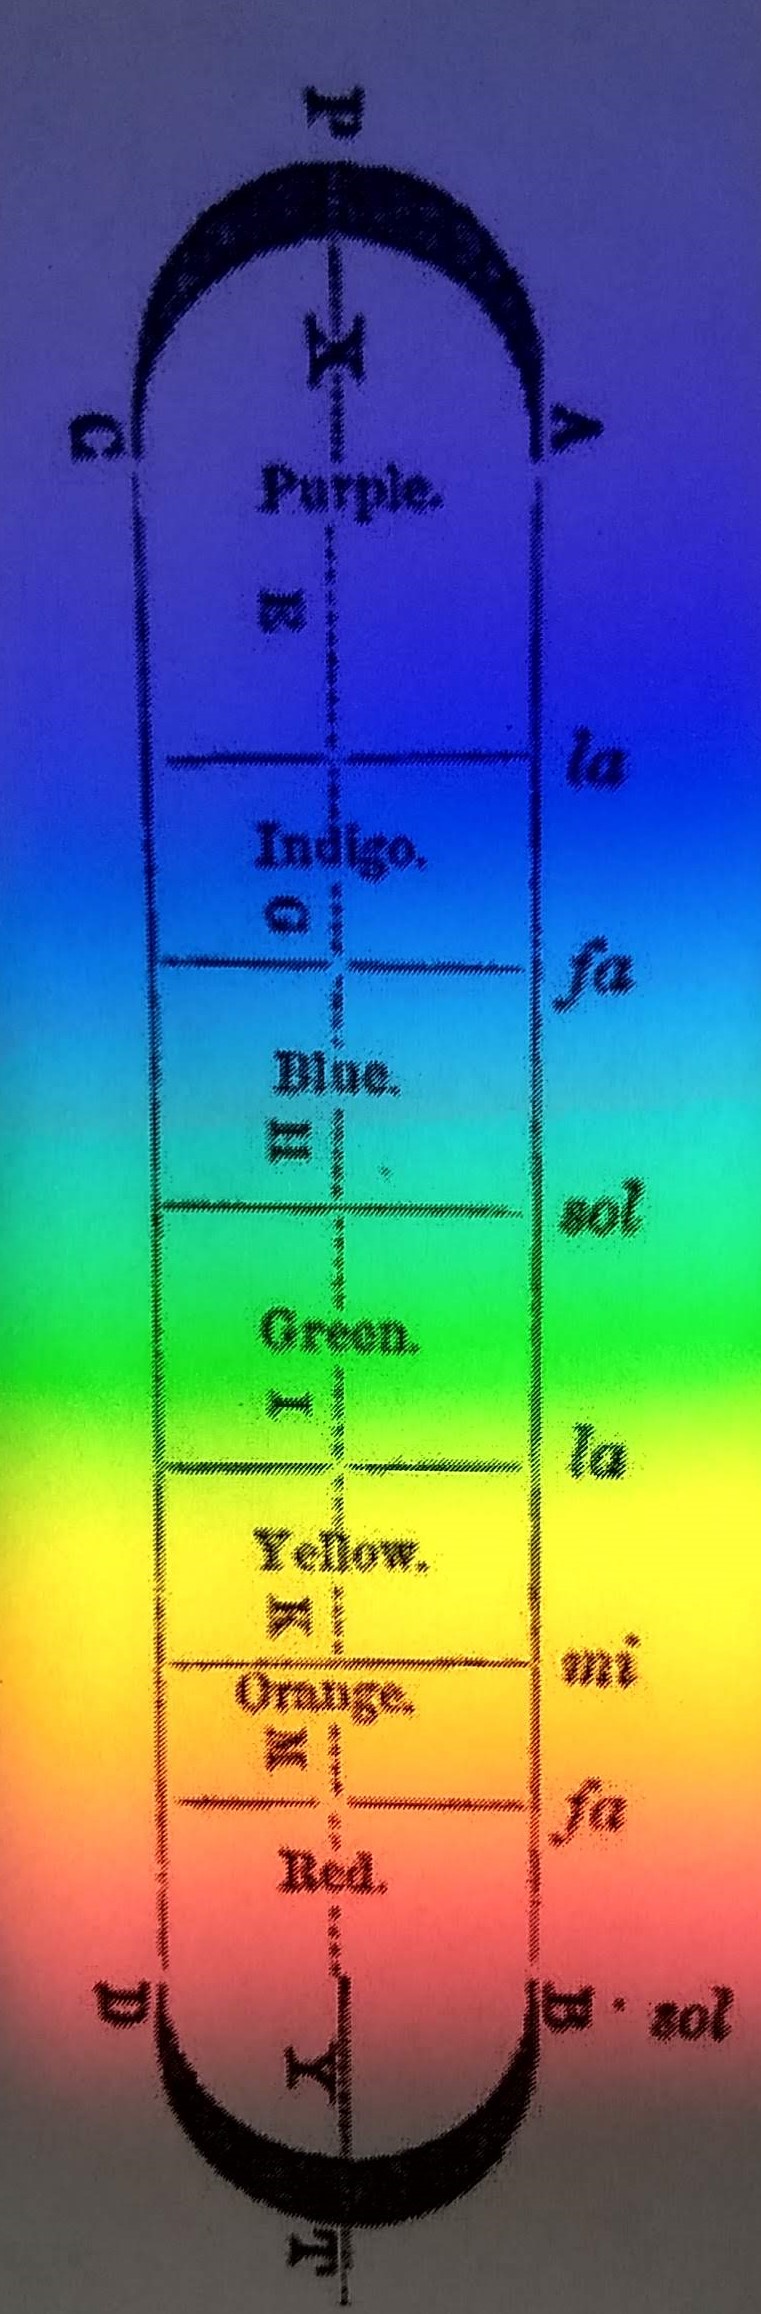 Newton's prismatic colors diagram with a prismatic spectrum